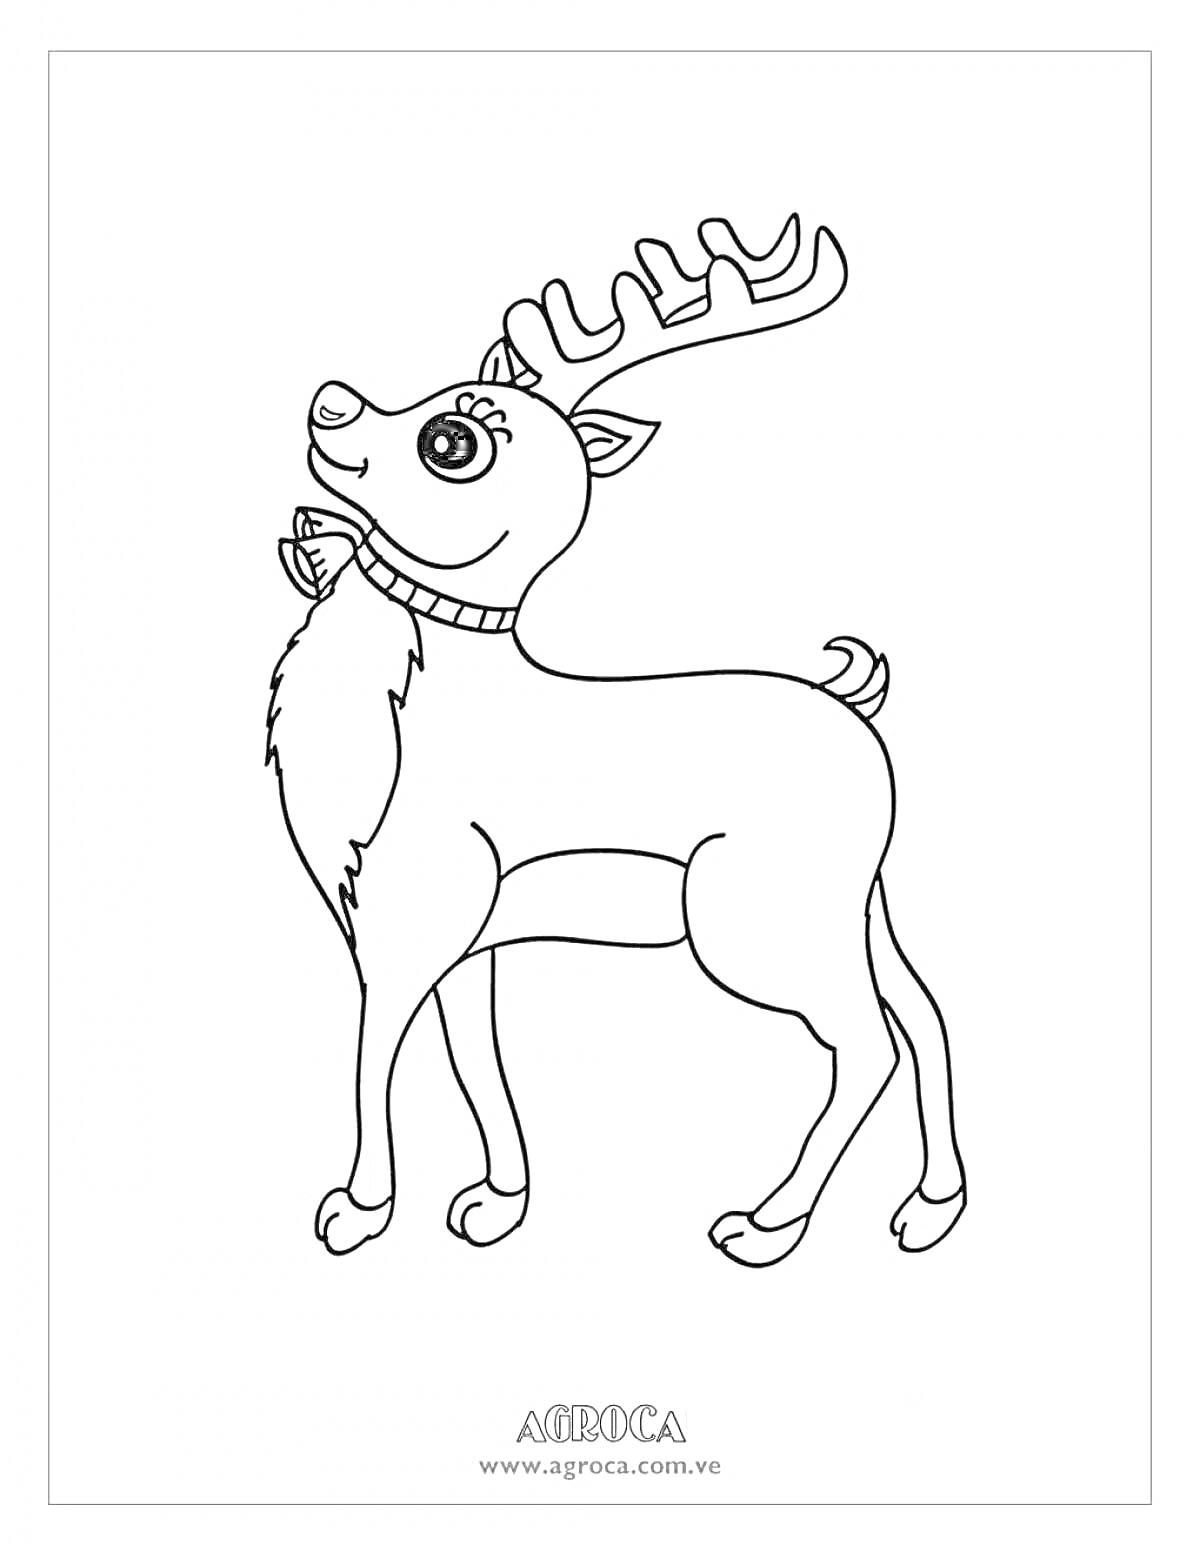 Раскраска Олень с рогами, стоящий на четырех ногах, с ошейником и улыбающимся лицом